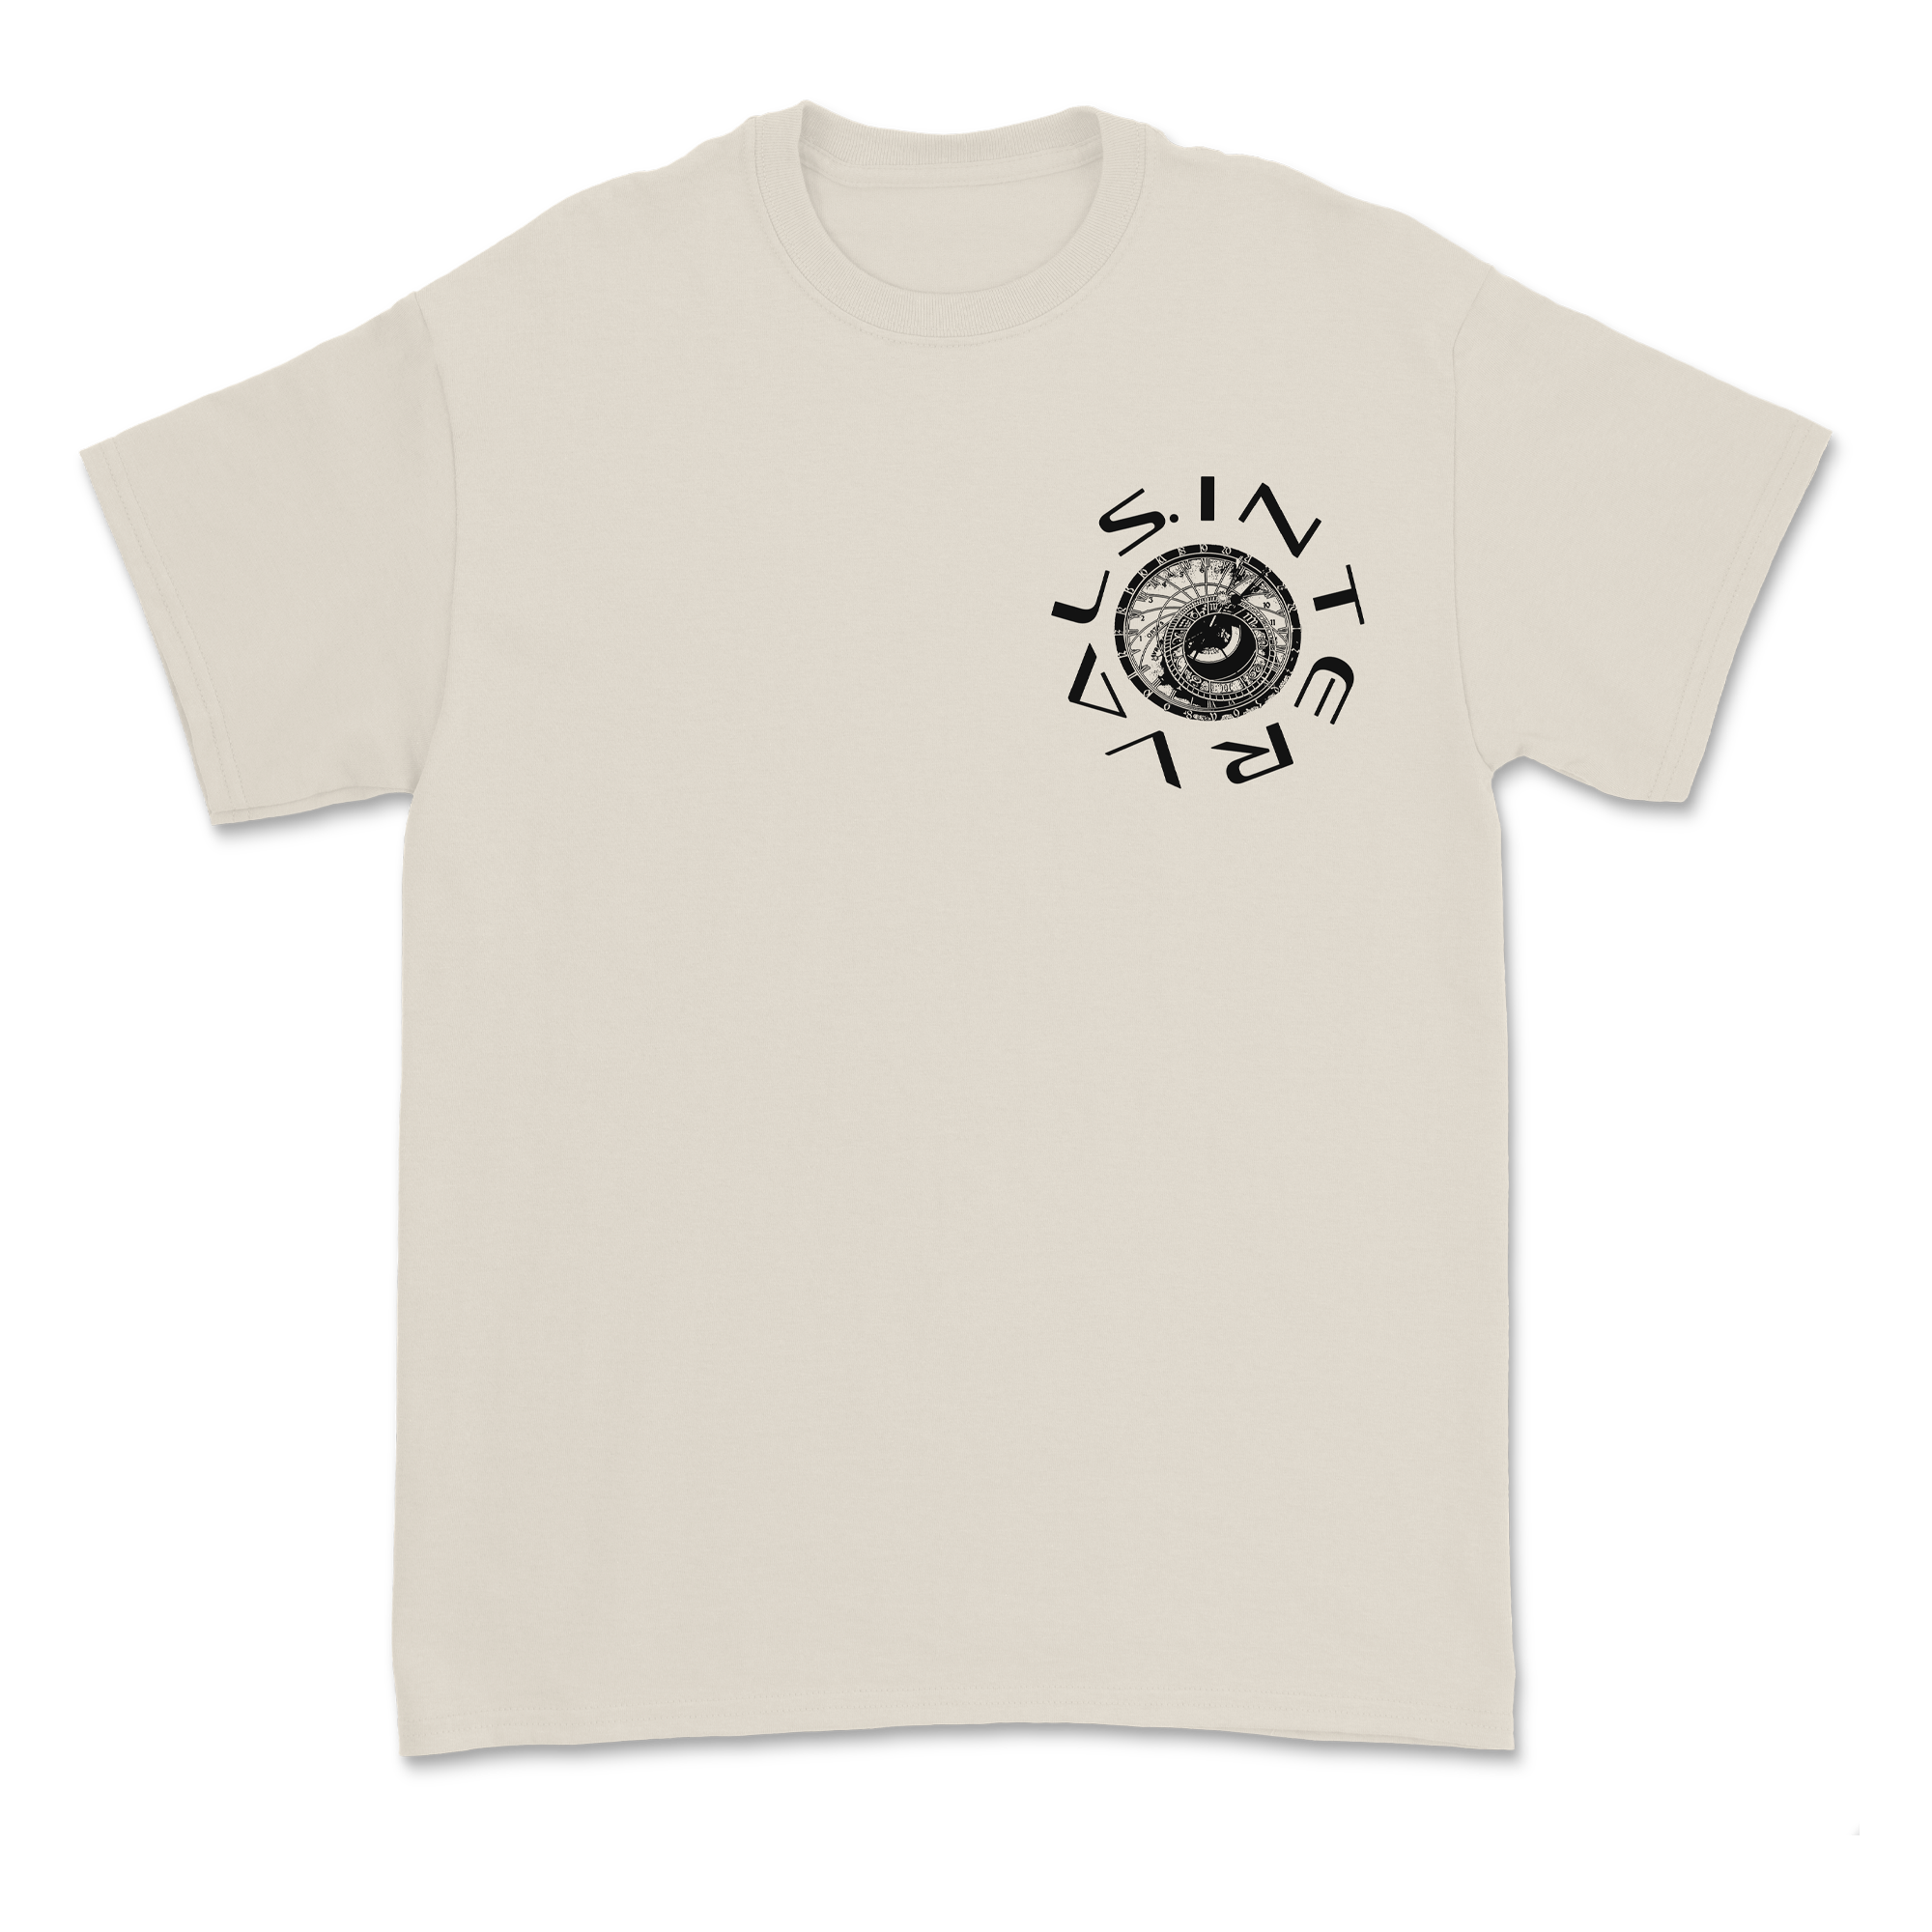 Intervals - Luna[r]tic T-Shirt